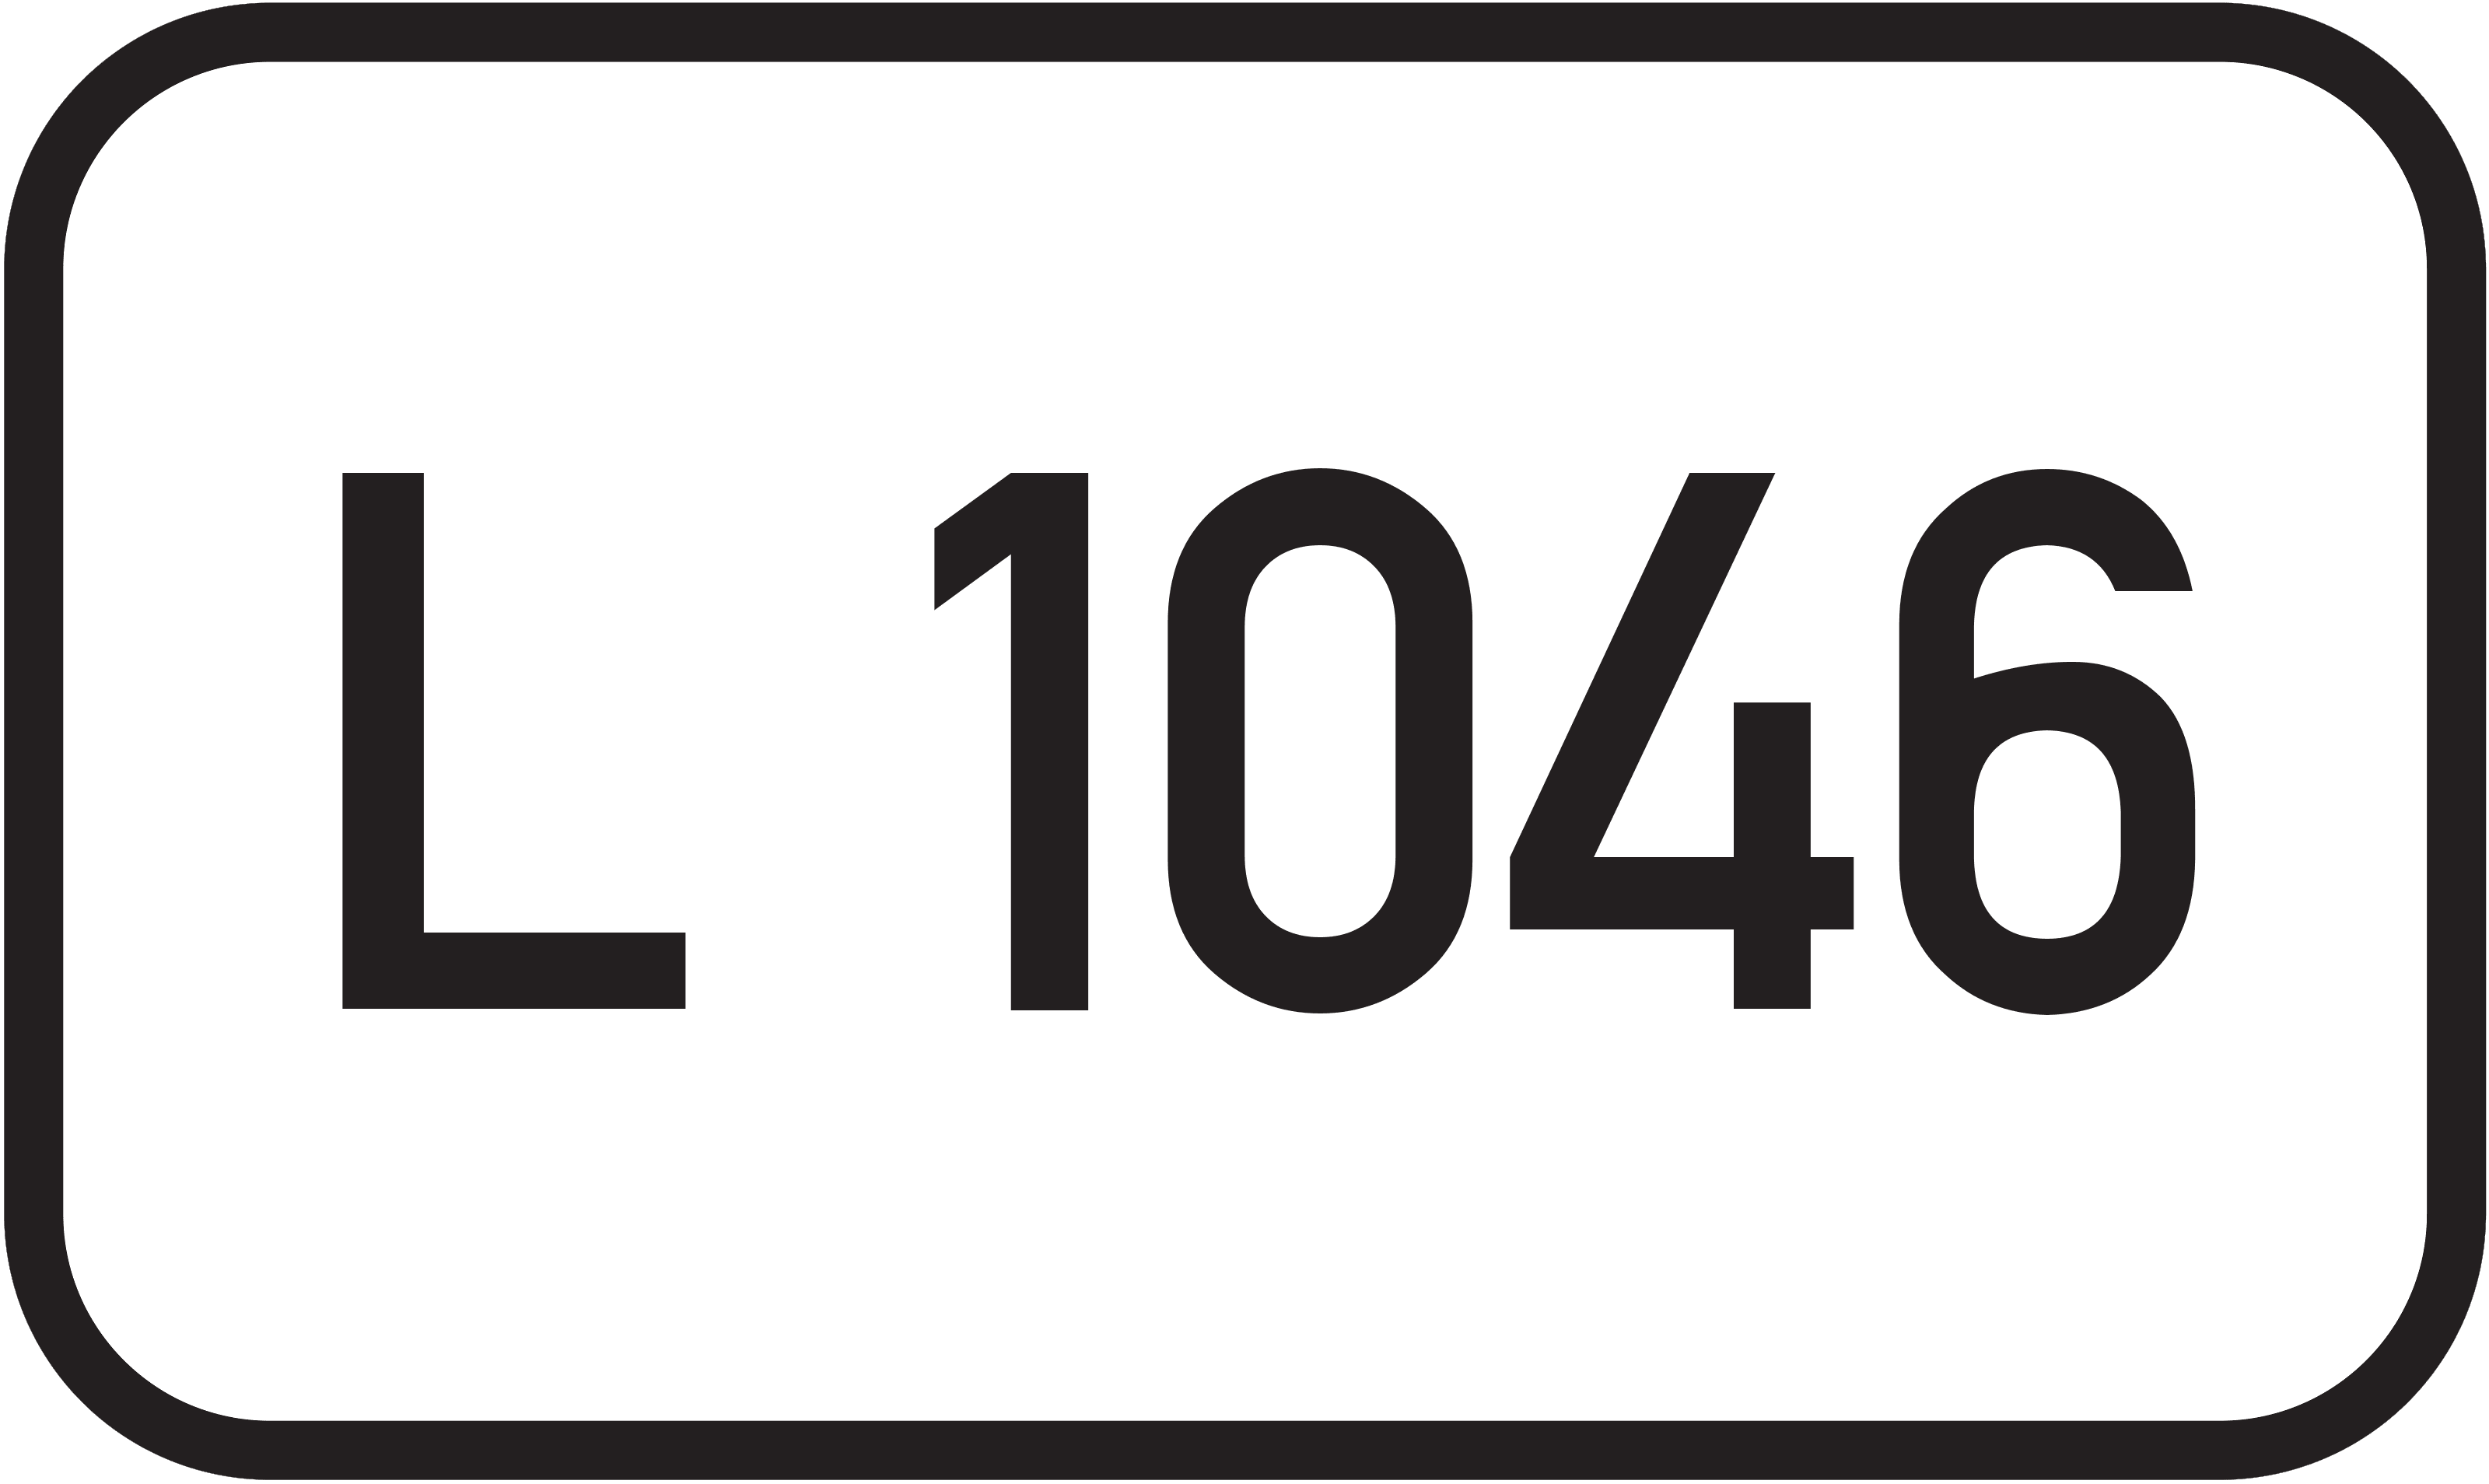 Landesstraße L 1046